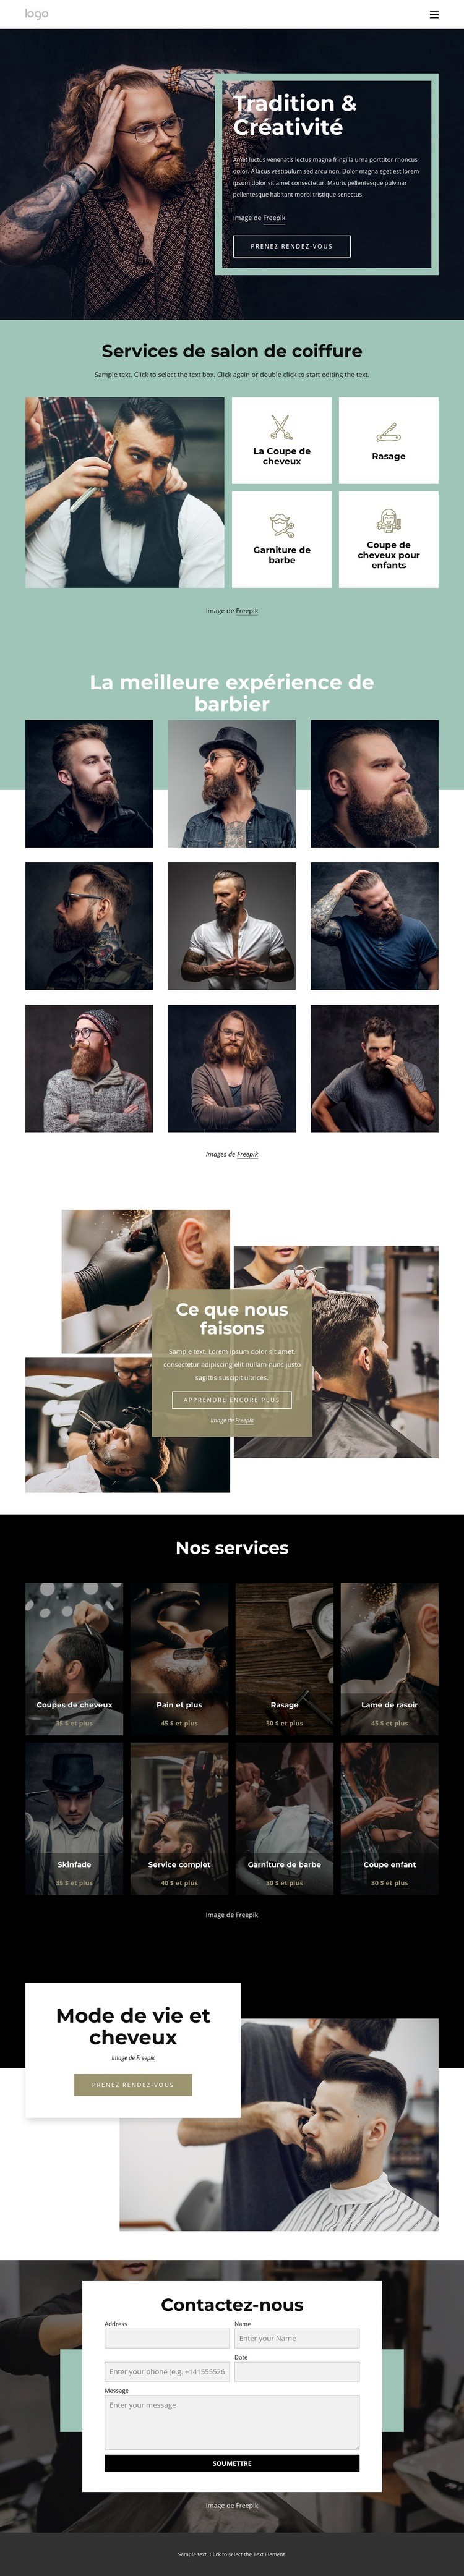 Salon de coiffure public Page de destination